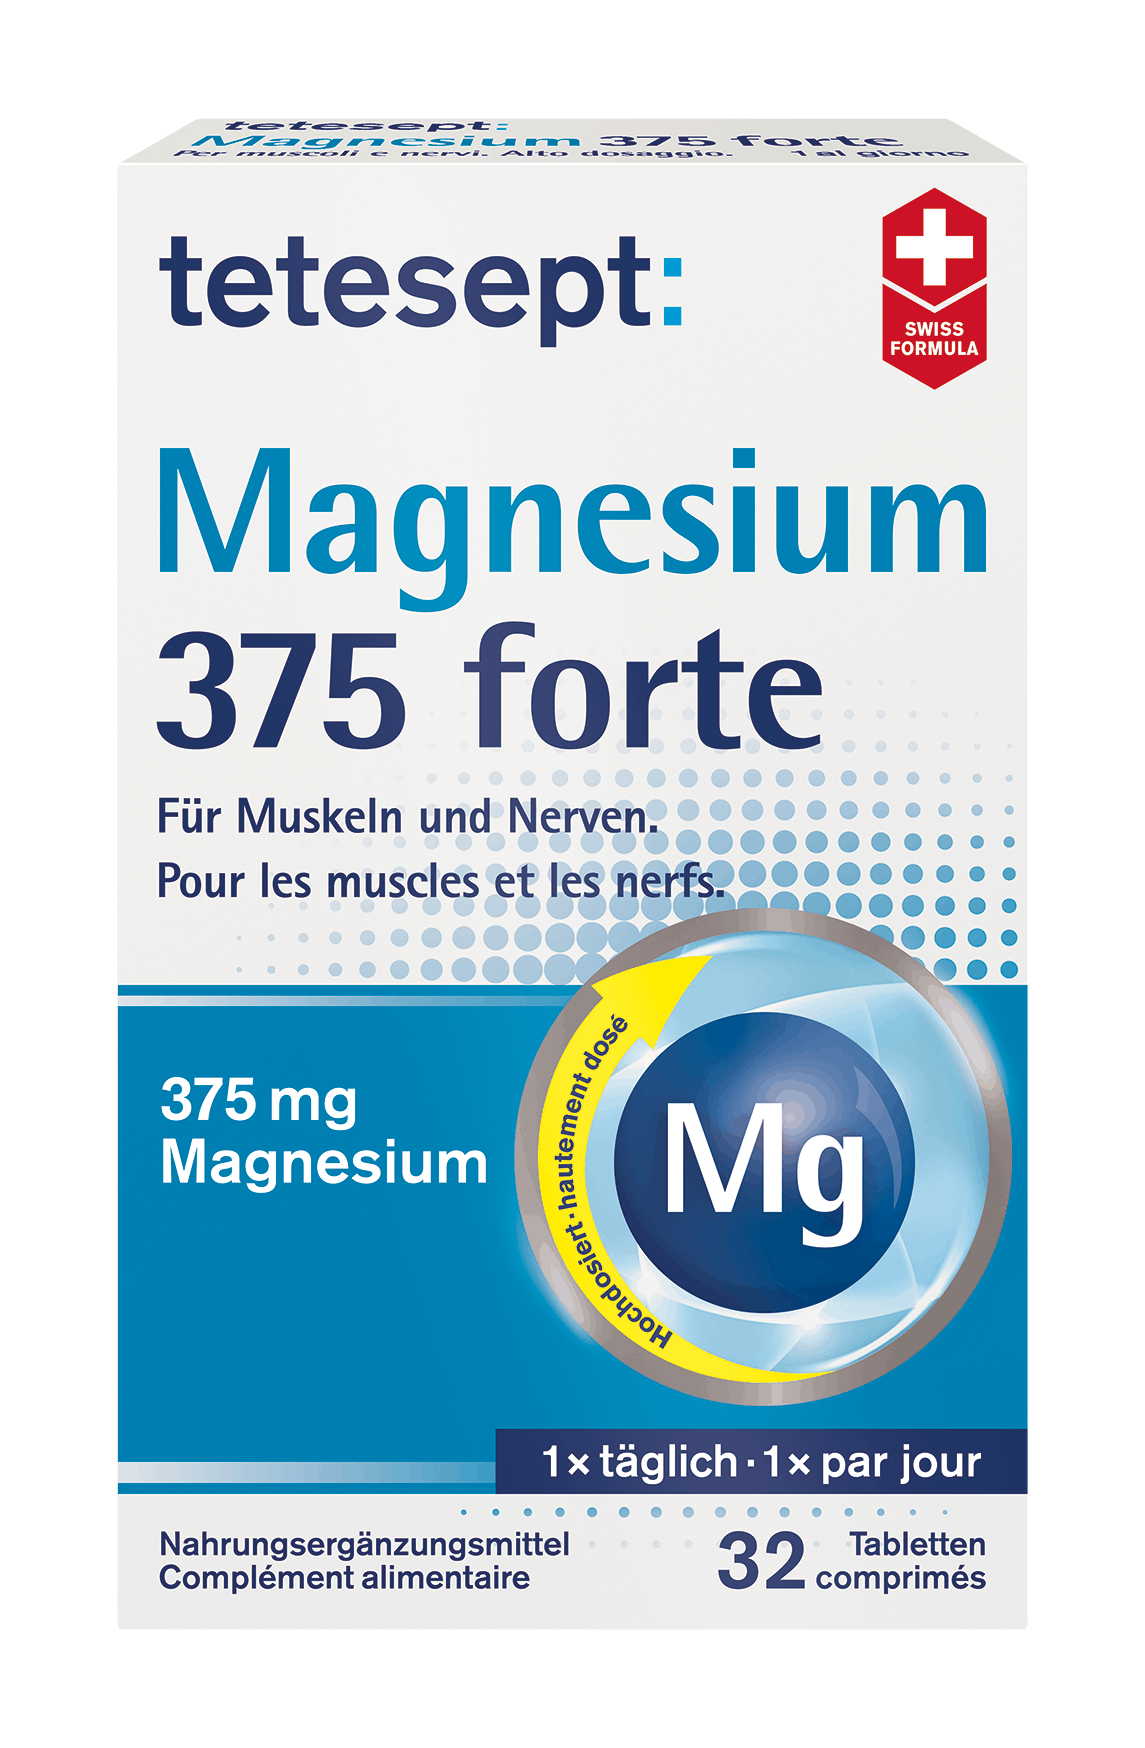 tetesept Magnesium 375 forte Tabletten